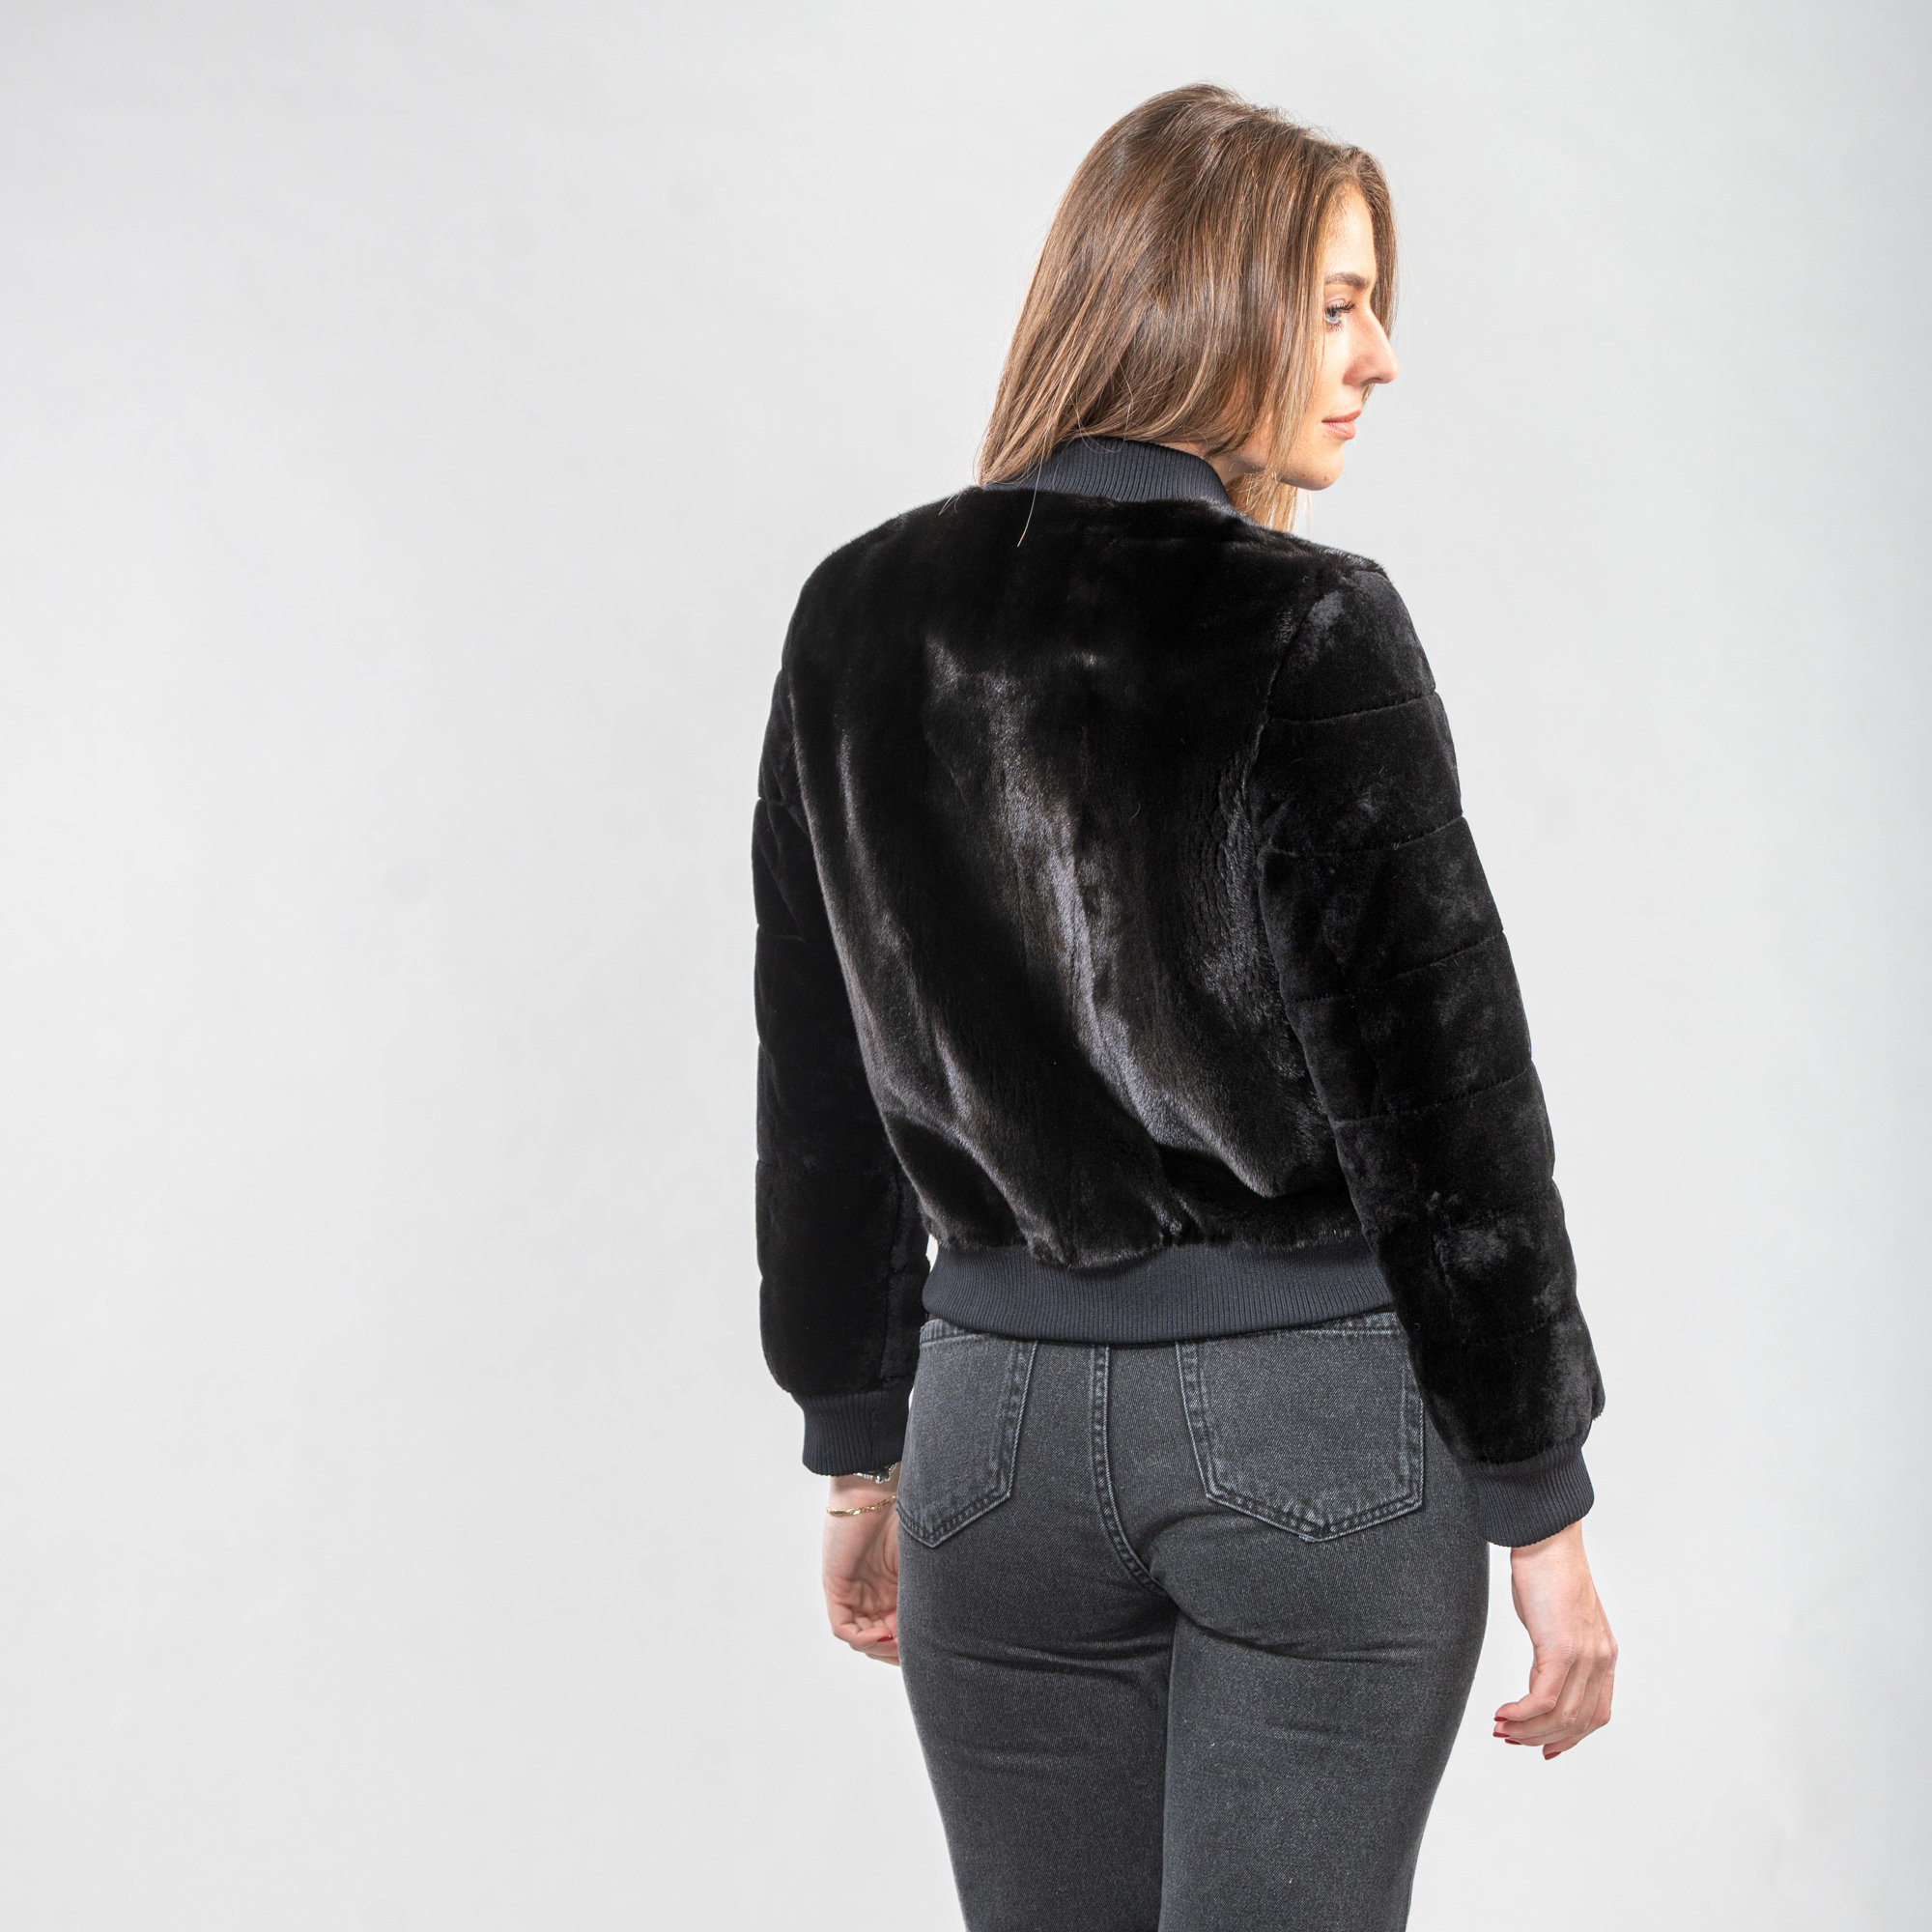 Mink fur short jacket in black color